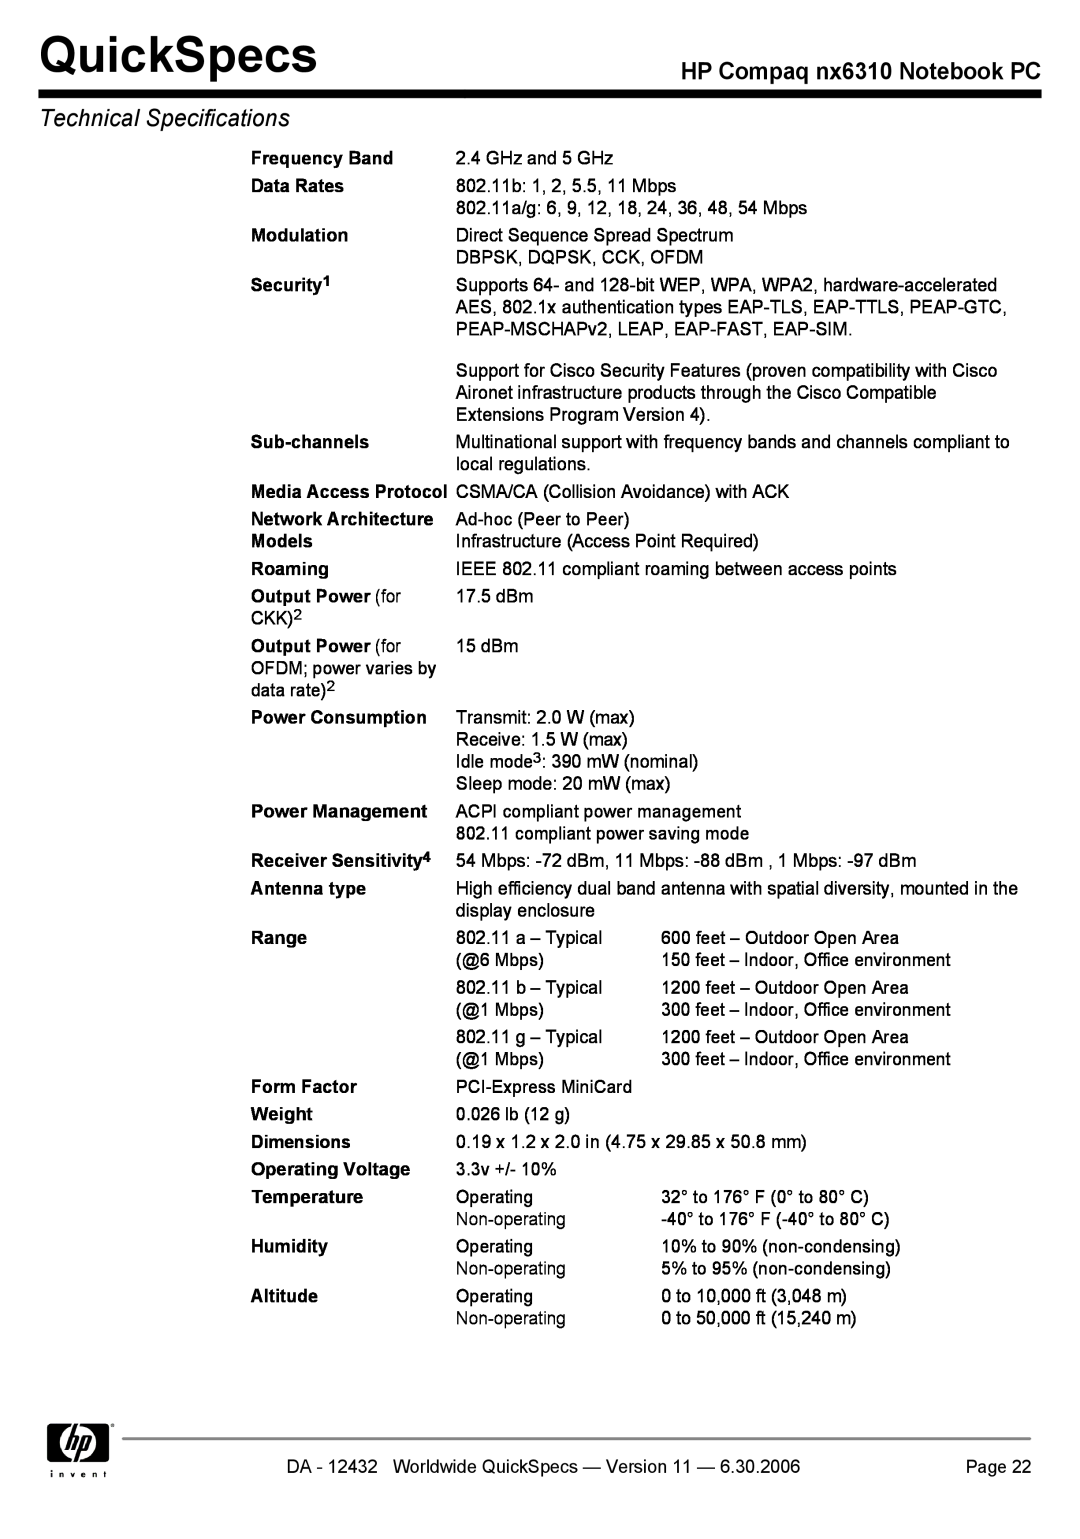 Compaq NX6310 manual QuickSpecs, HP Compaq nx6310 Notebook PC, Technical Specifications 